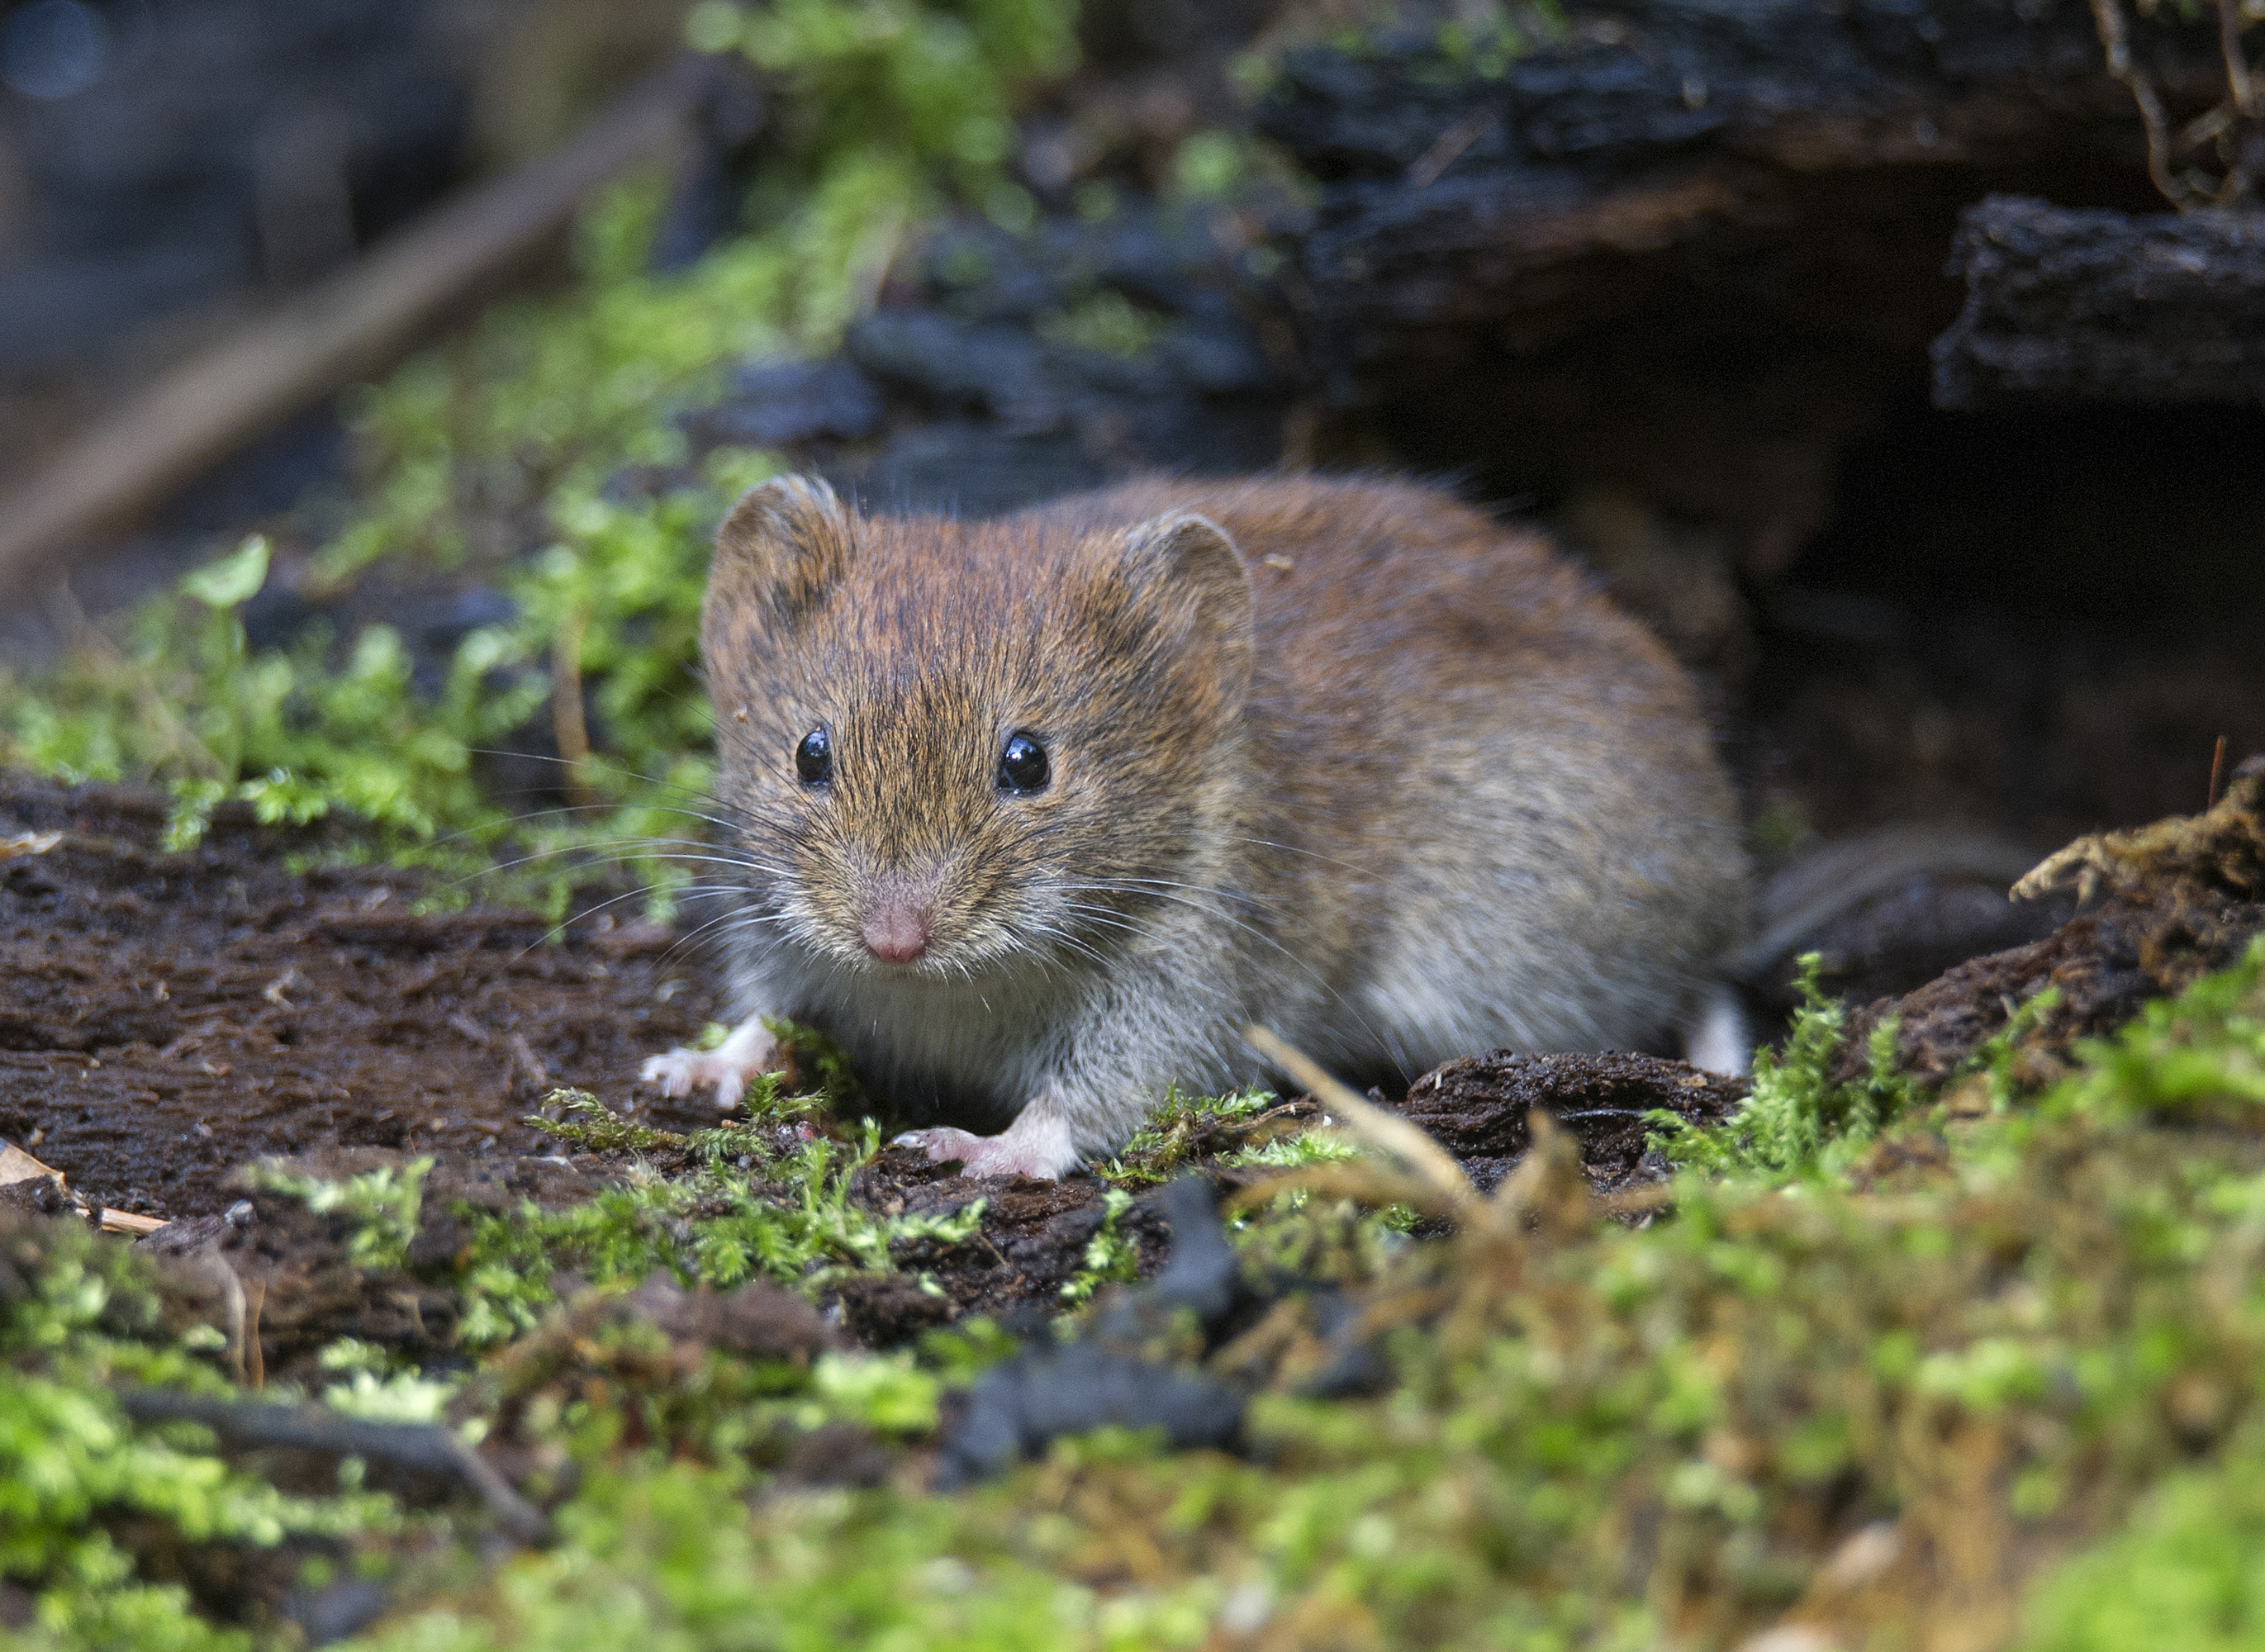 "فأر الحقل" (Vole) الذي يبدو طبيعيا وهو يعيش في قلب هذه المنطقة الملوثة